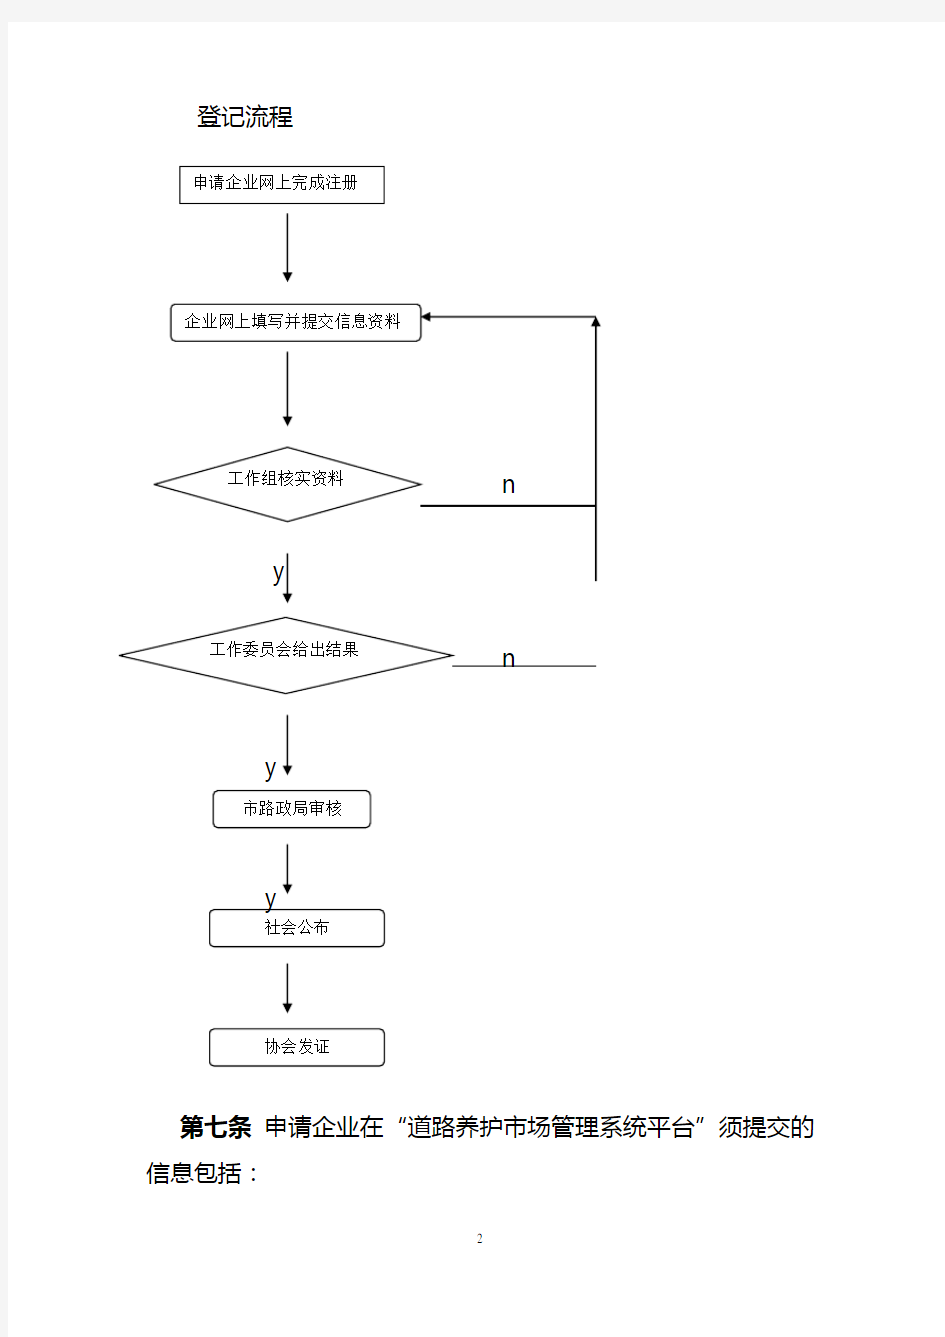 上海道路养护企业从业条件登记管理细则